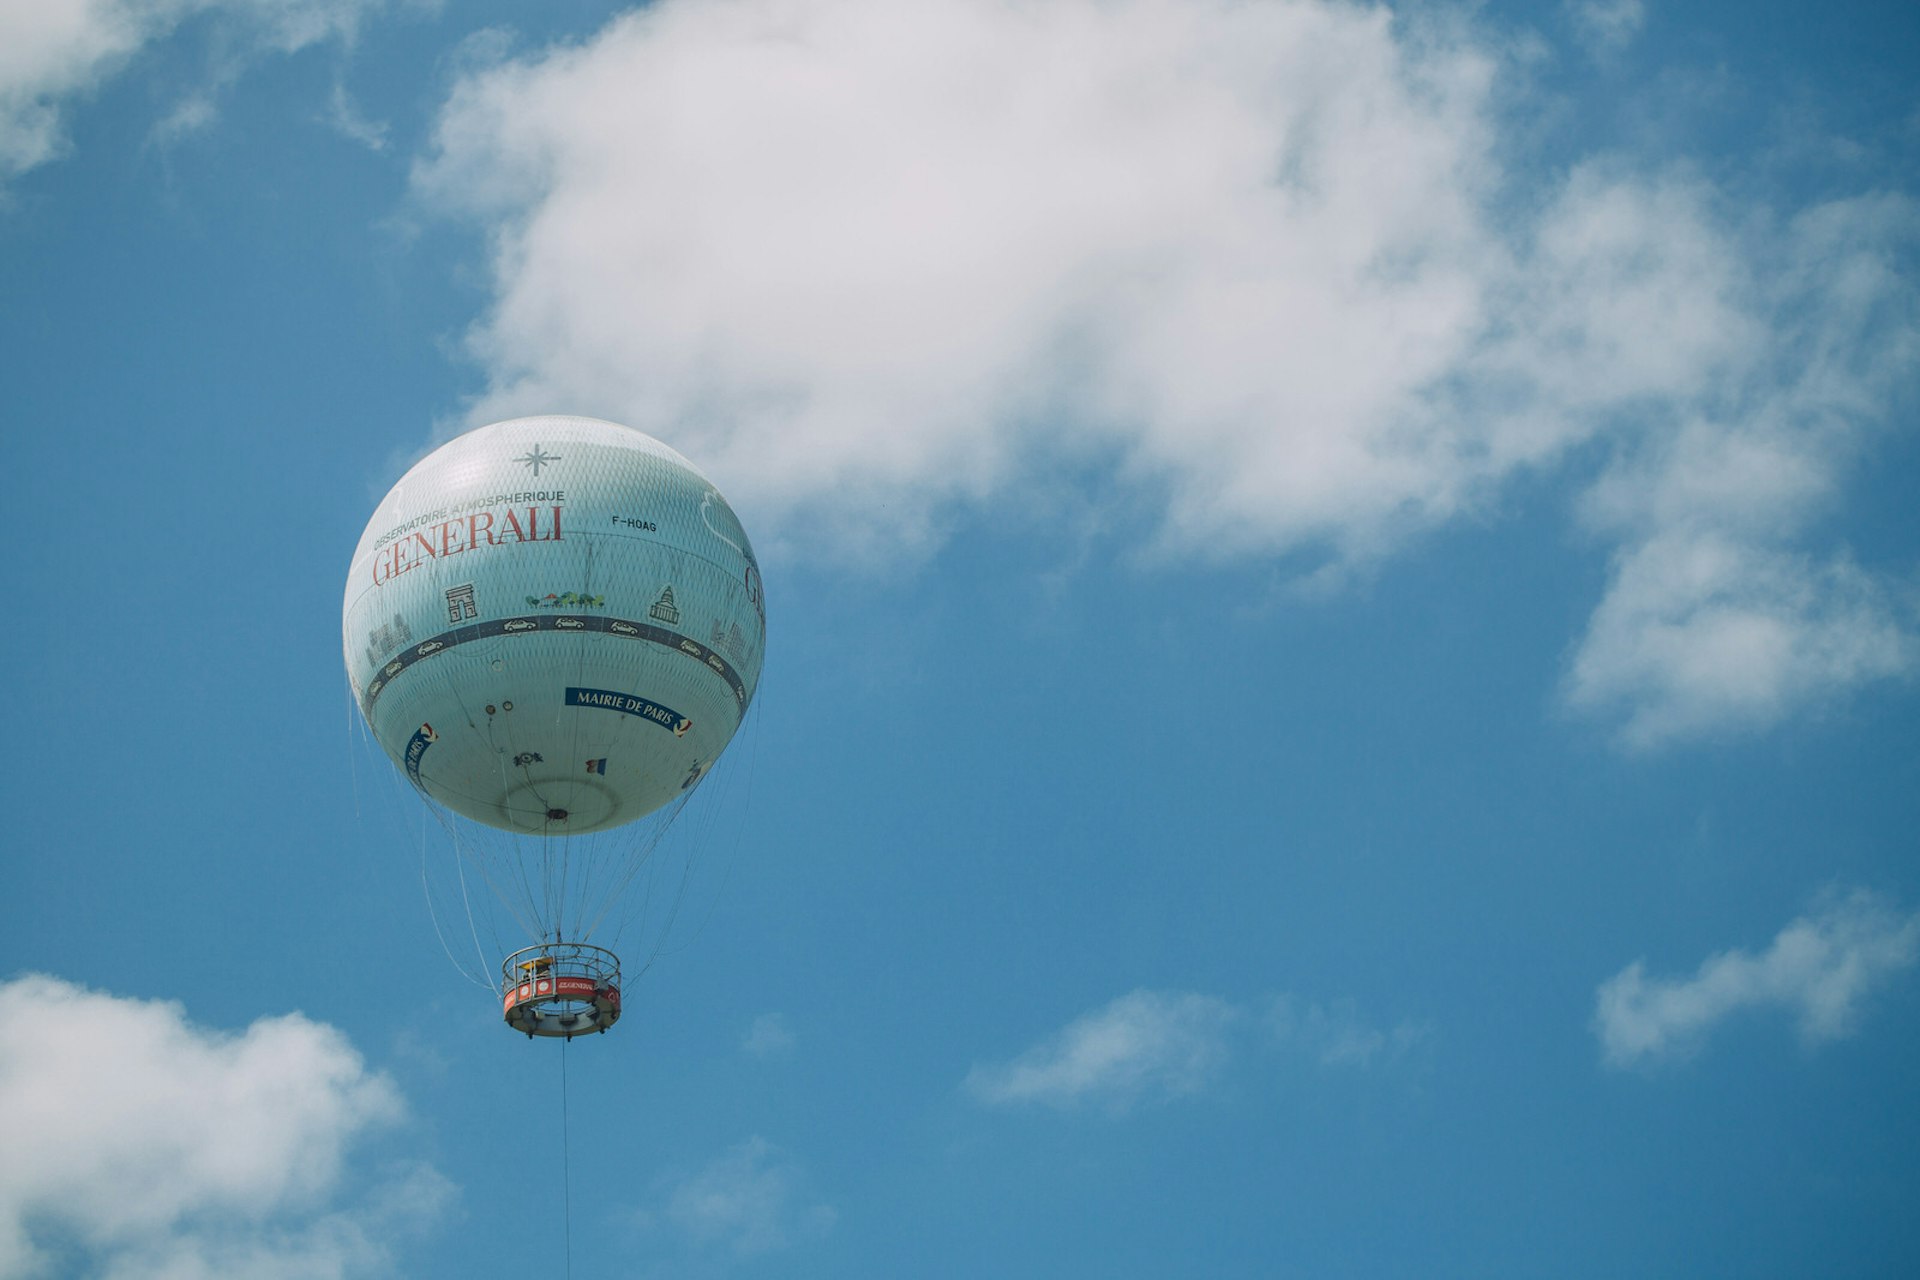 Ballon de Paris floats in the sky